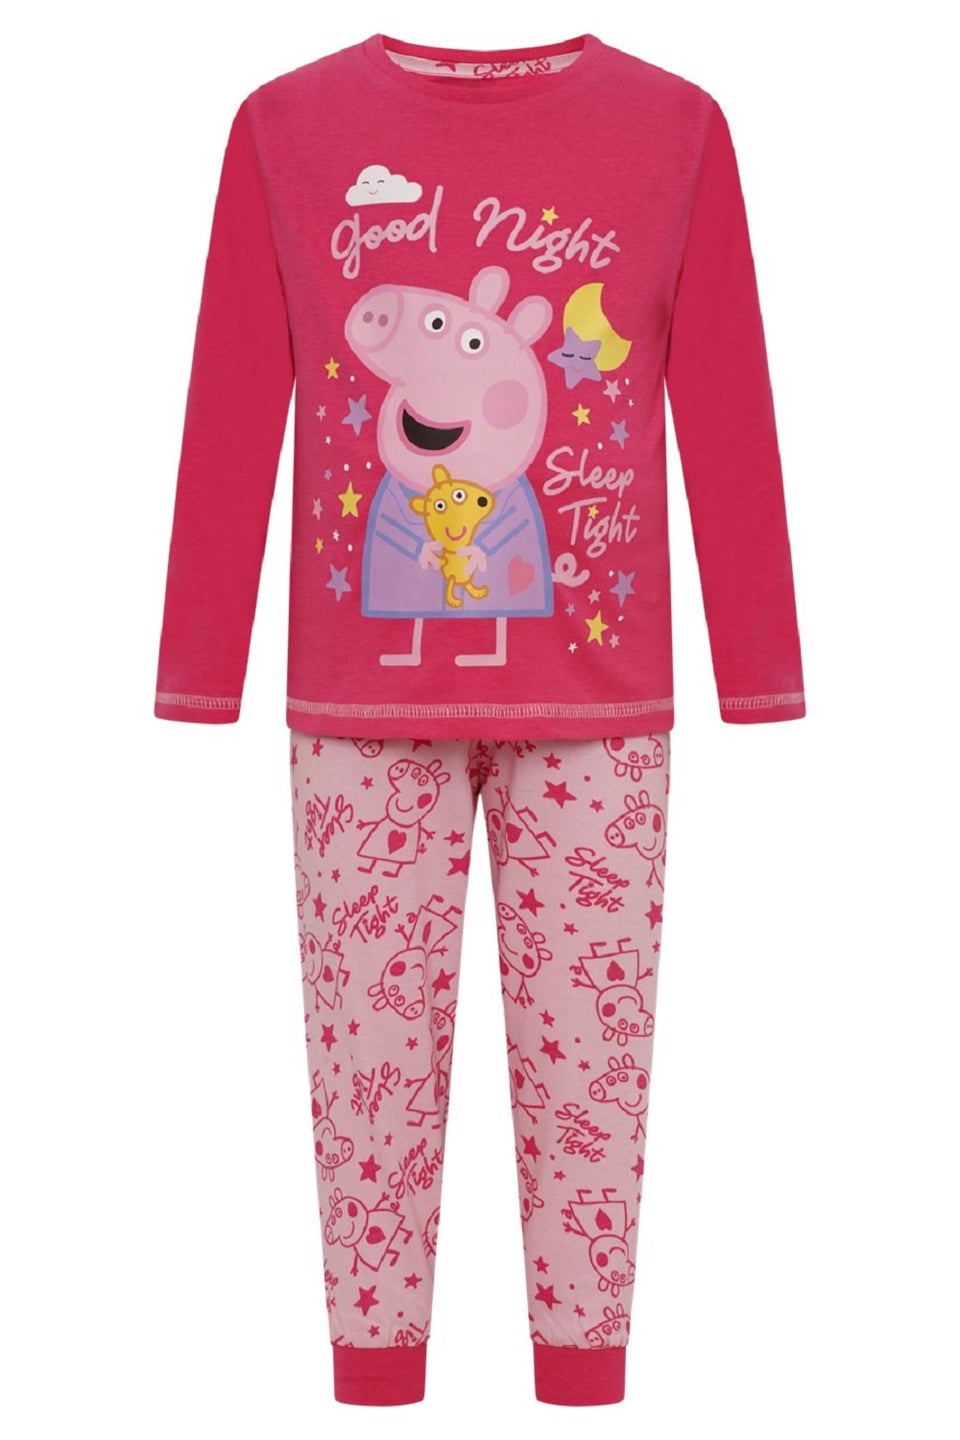 Детский пижамный комплект Brand Threads со Peppa Pig спокойной ночи 50г 2021